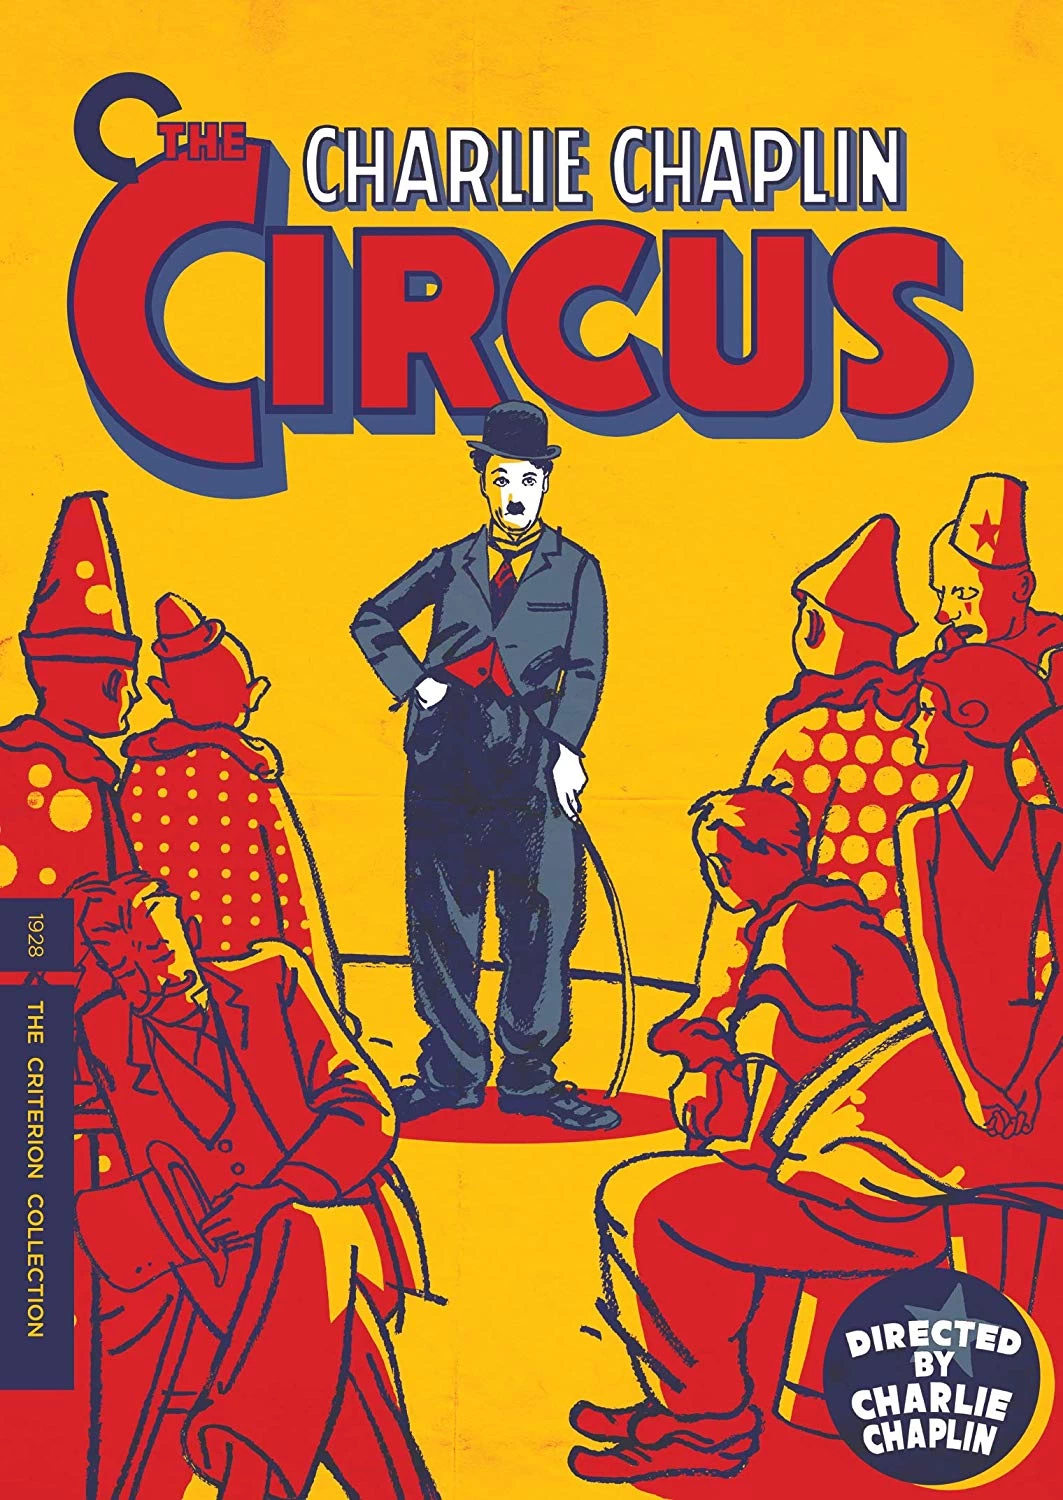 马戏团 蓝光原盘下载+高清MKV版/大马戏团 1928 The Circus 21.2G